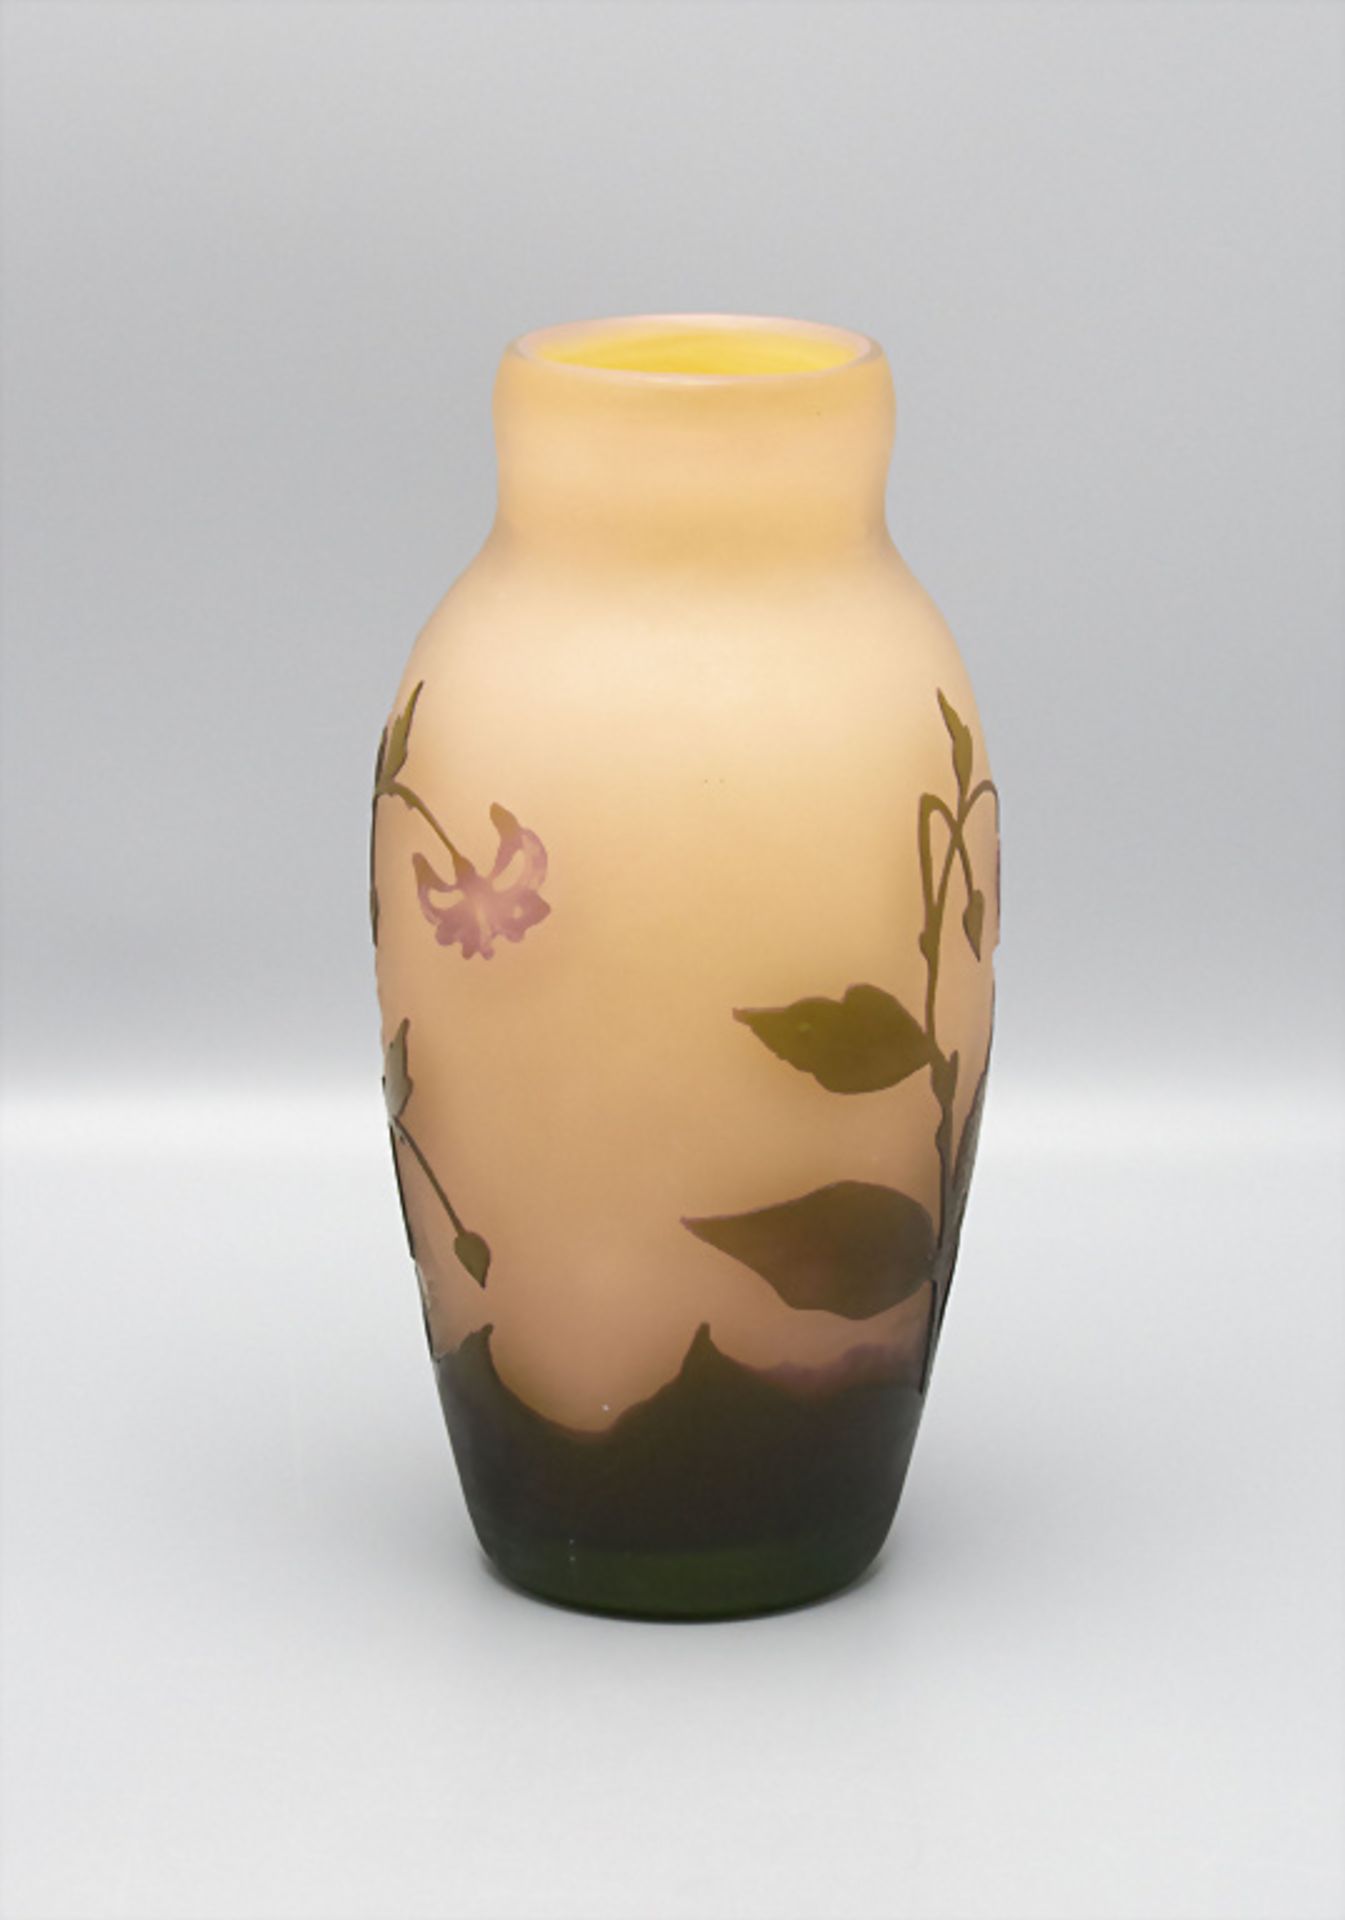 Jugendstil Vase, Arsall, Vereinigte Lausitzer Glaswerke AG, Weisswasser, 1921 - Bild 3 aus 6